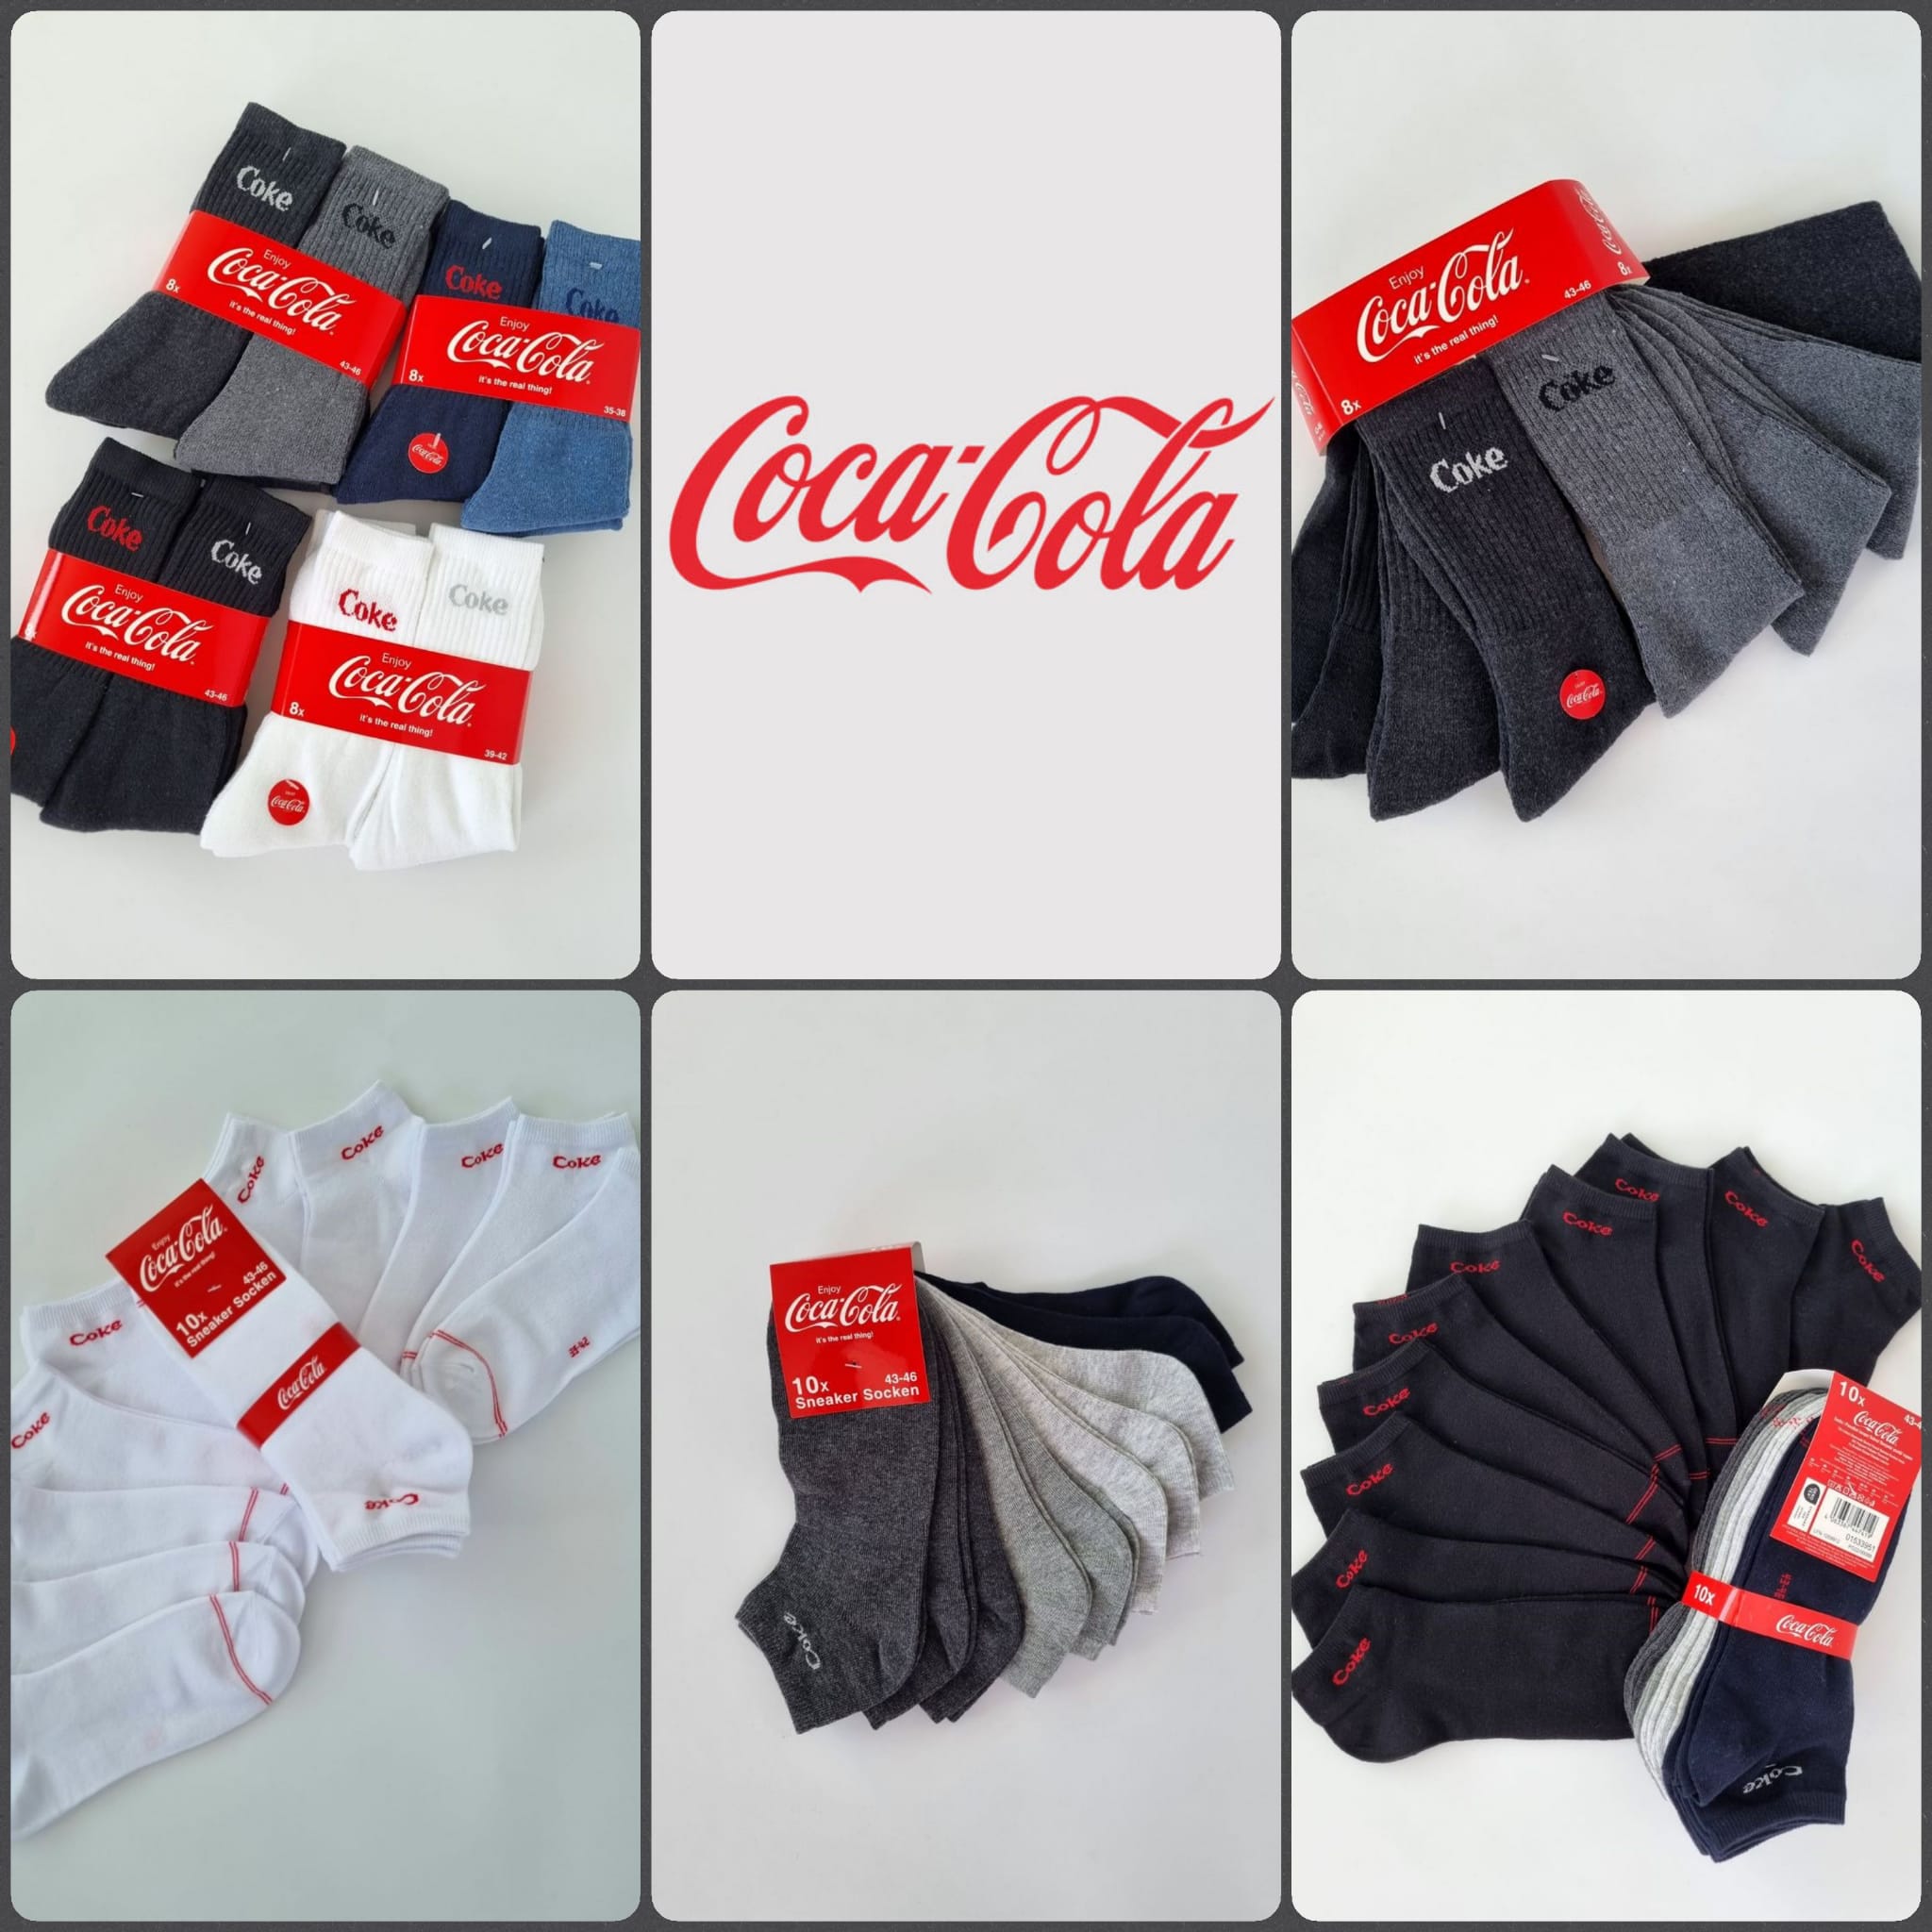 070044 Men's socks from Coca-Cola